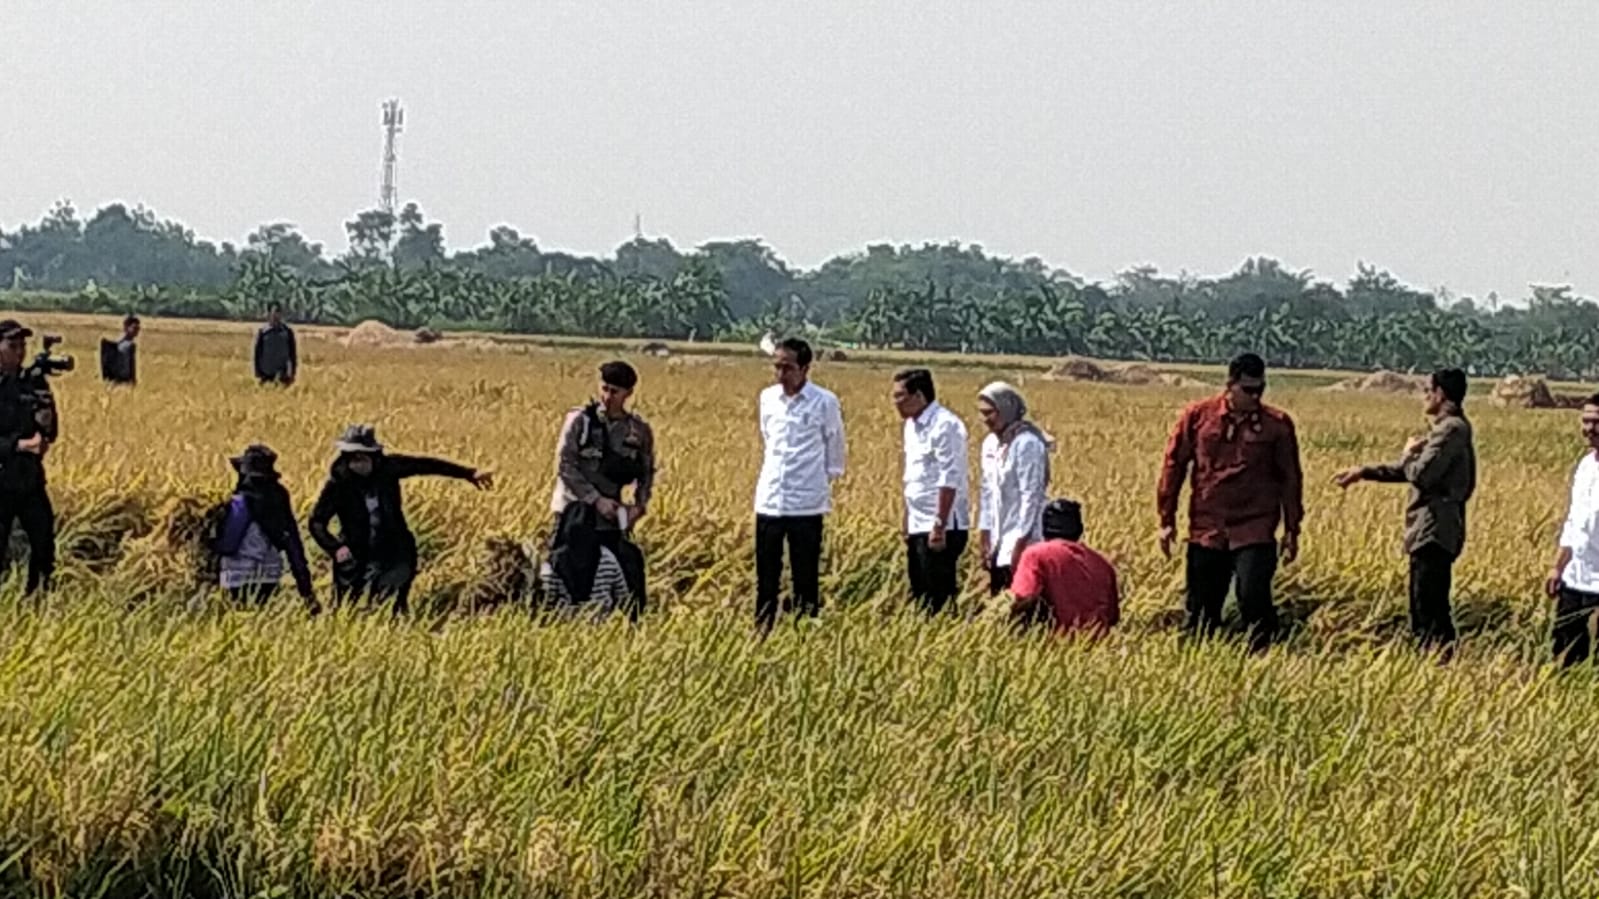 Presiden Jokowi Tiba di Indramayu, Langsung Turun ke Sawah Lihat Petani Panen